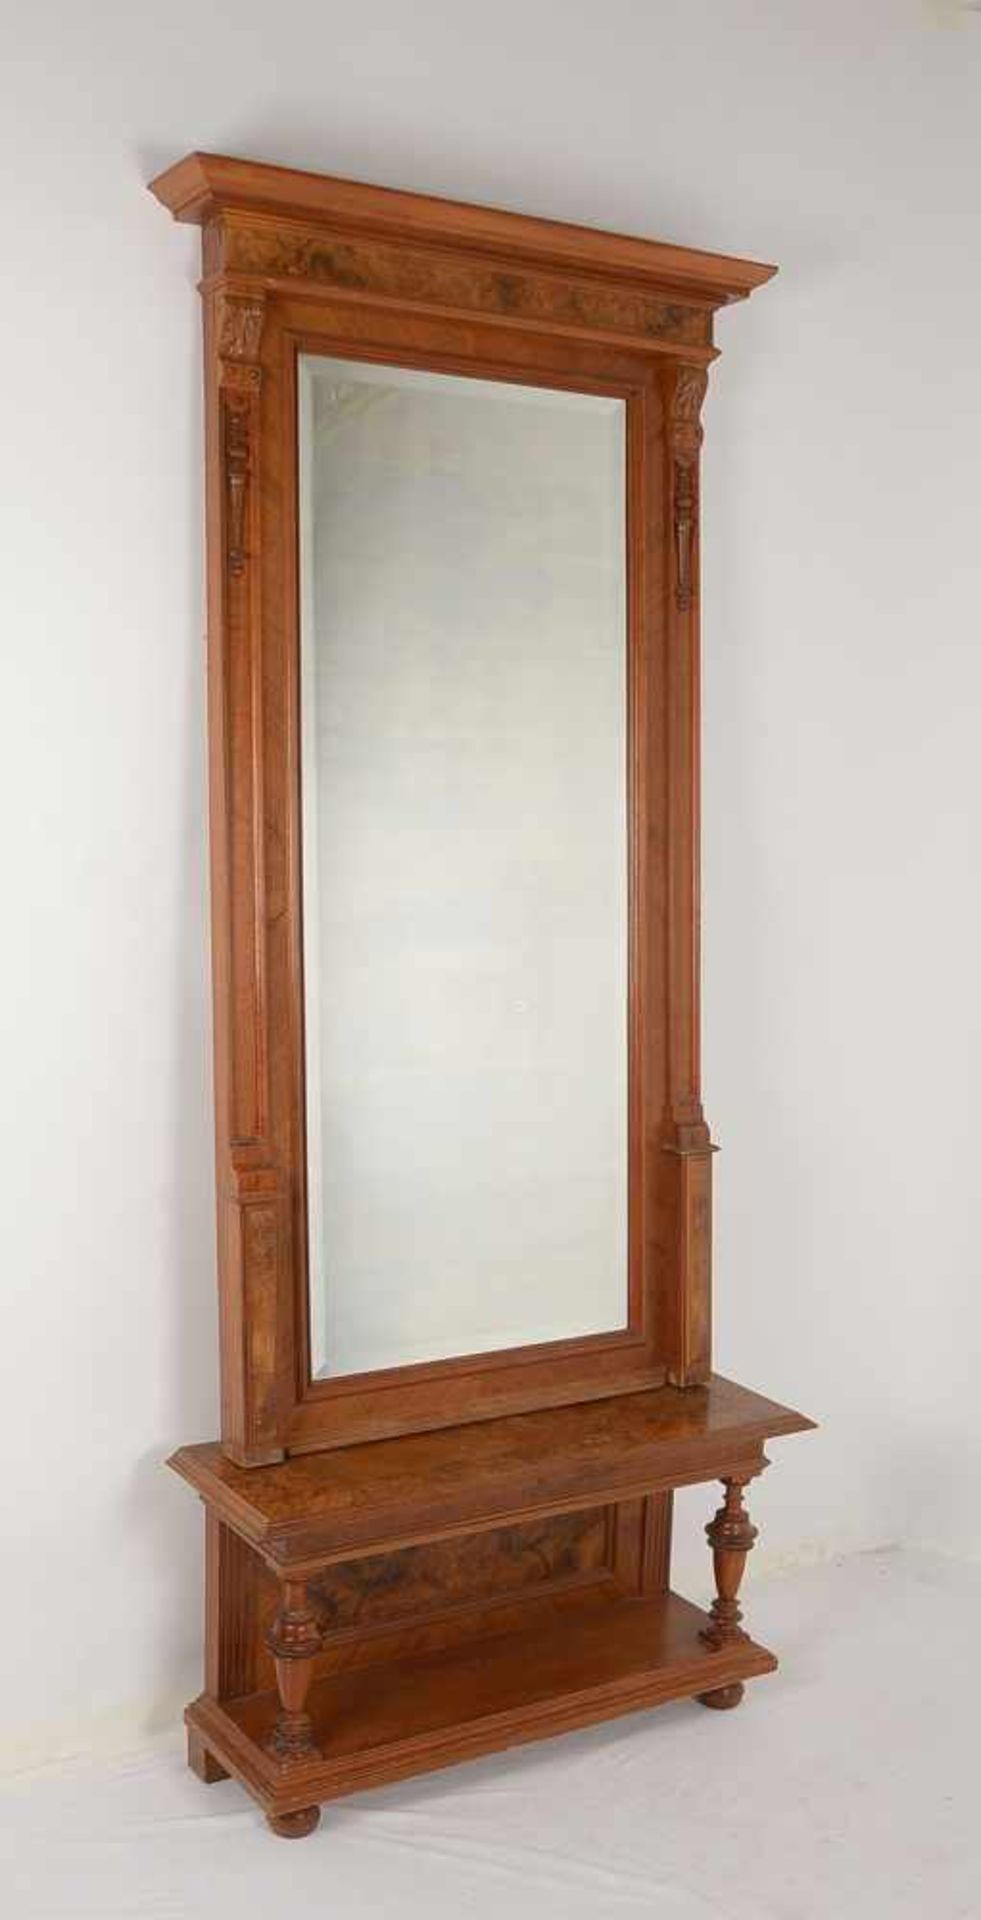 Konsolenspiegel, Gründerzeit, Mahagoni, facettiertes Glas; Gesamthöhe 222 cm, Breite 94 cm